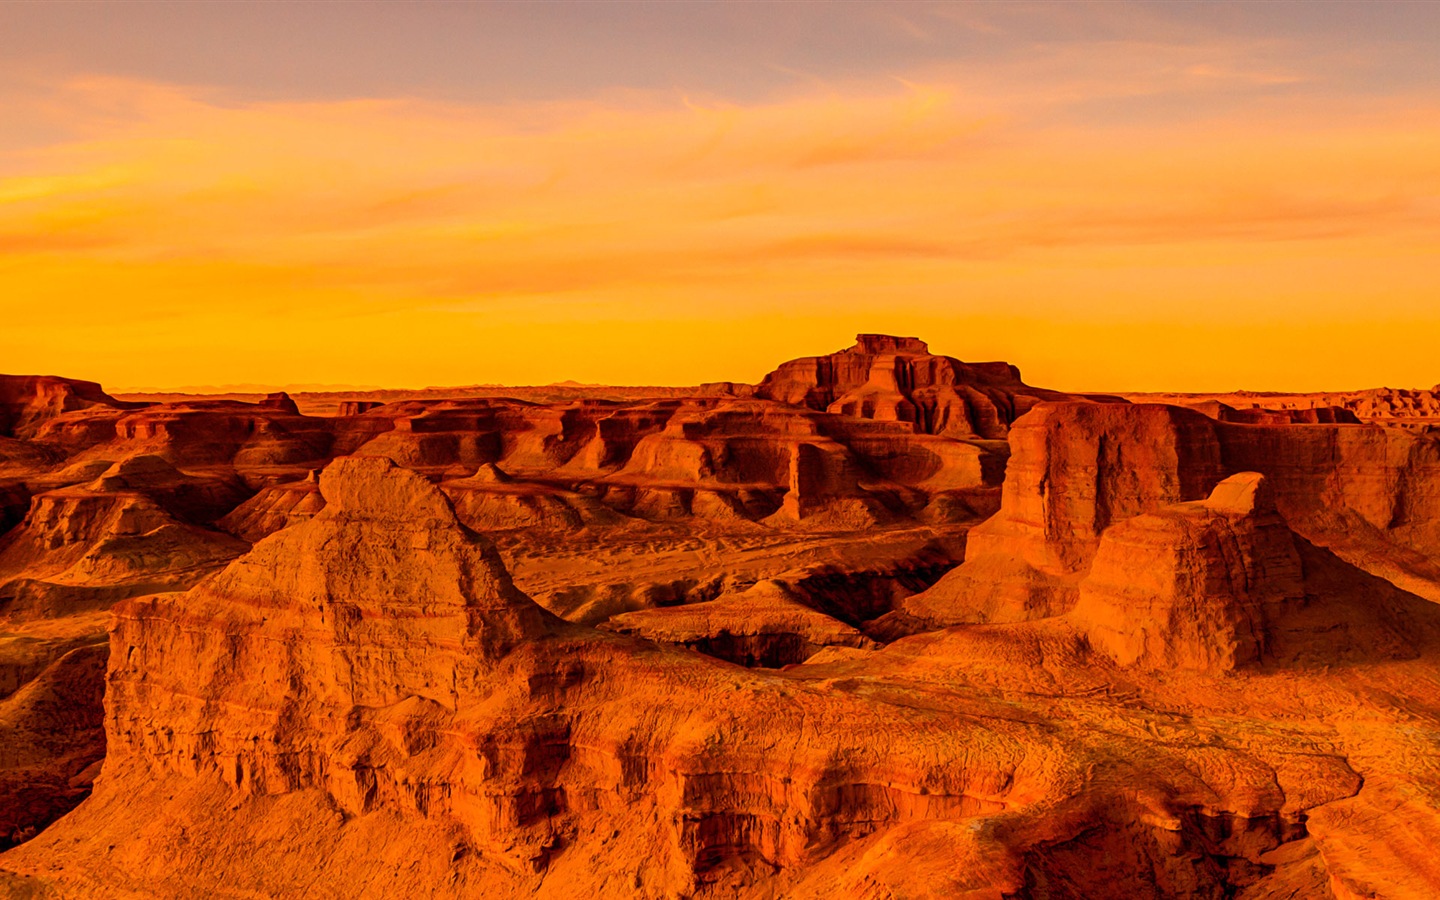 Les déserts chauds et arides, de Windows 8 fonds d'écran widescreen panoramique #6 - 1440x900